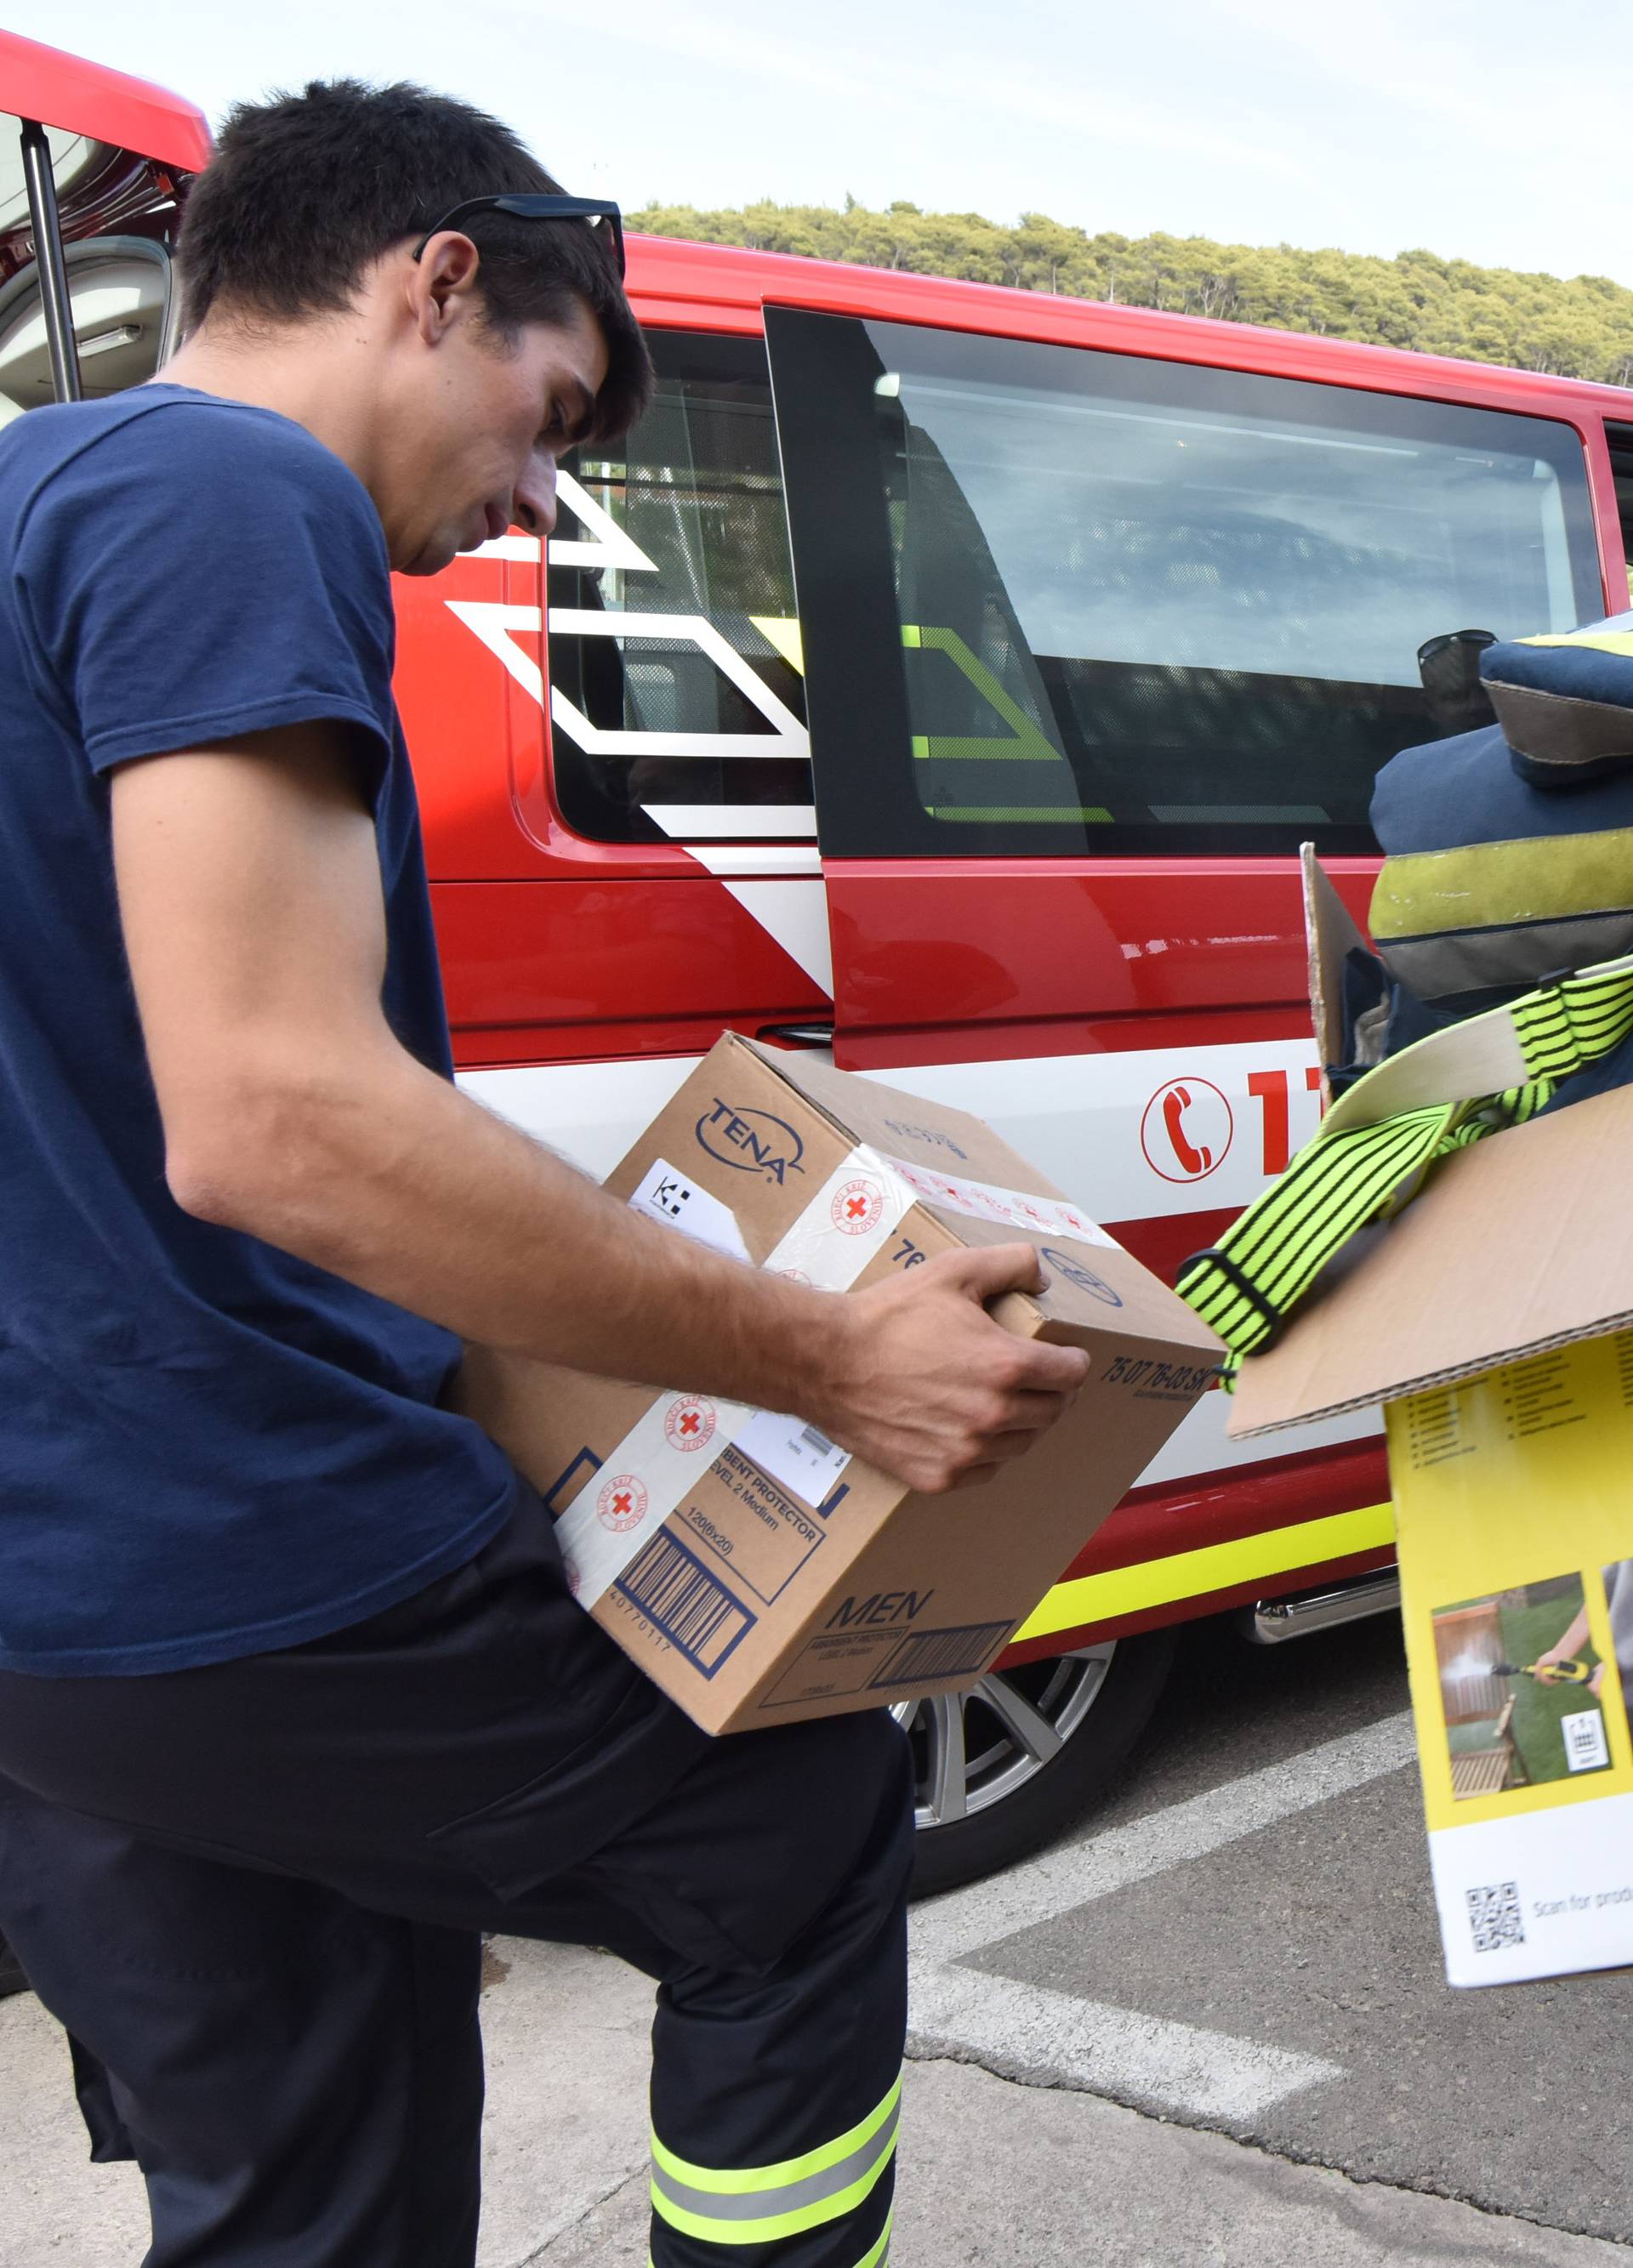 Slovenski vatrogasci u Tisno poslali dvije tone opreme